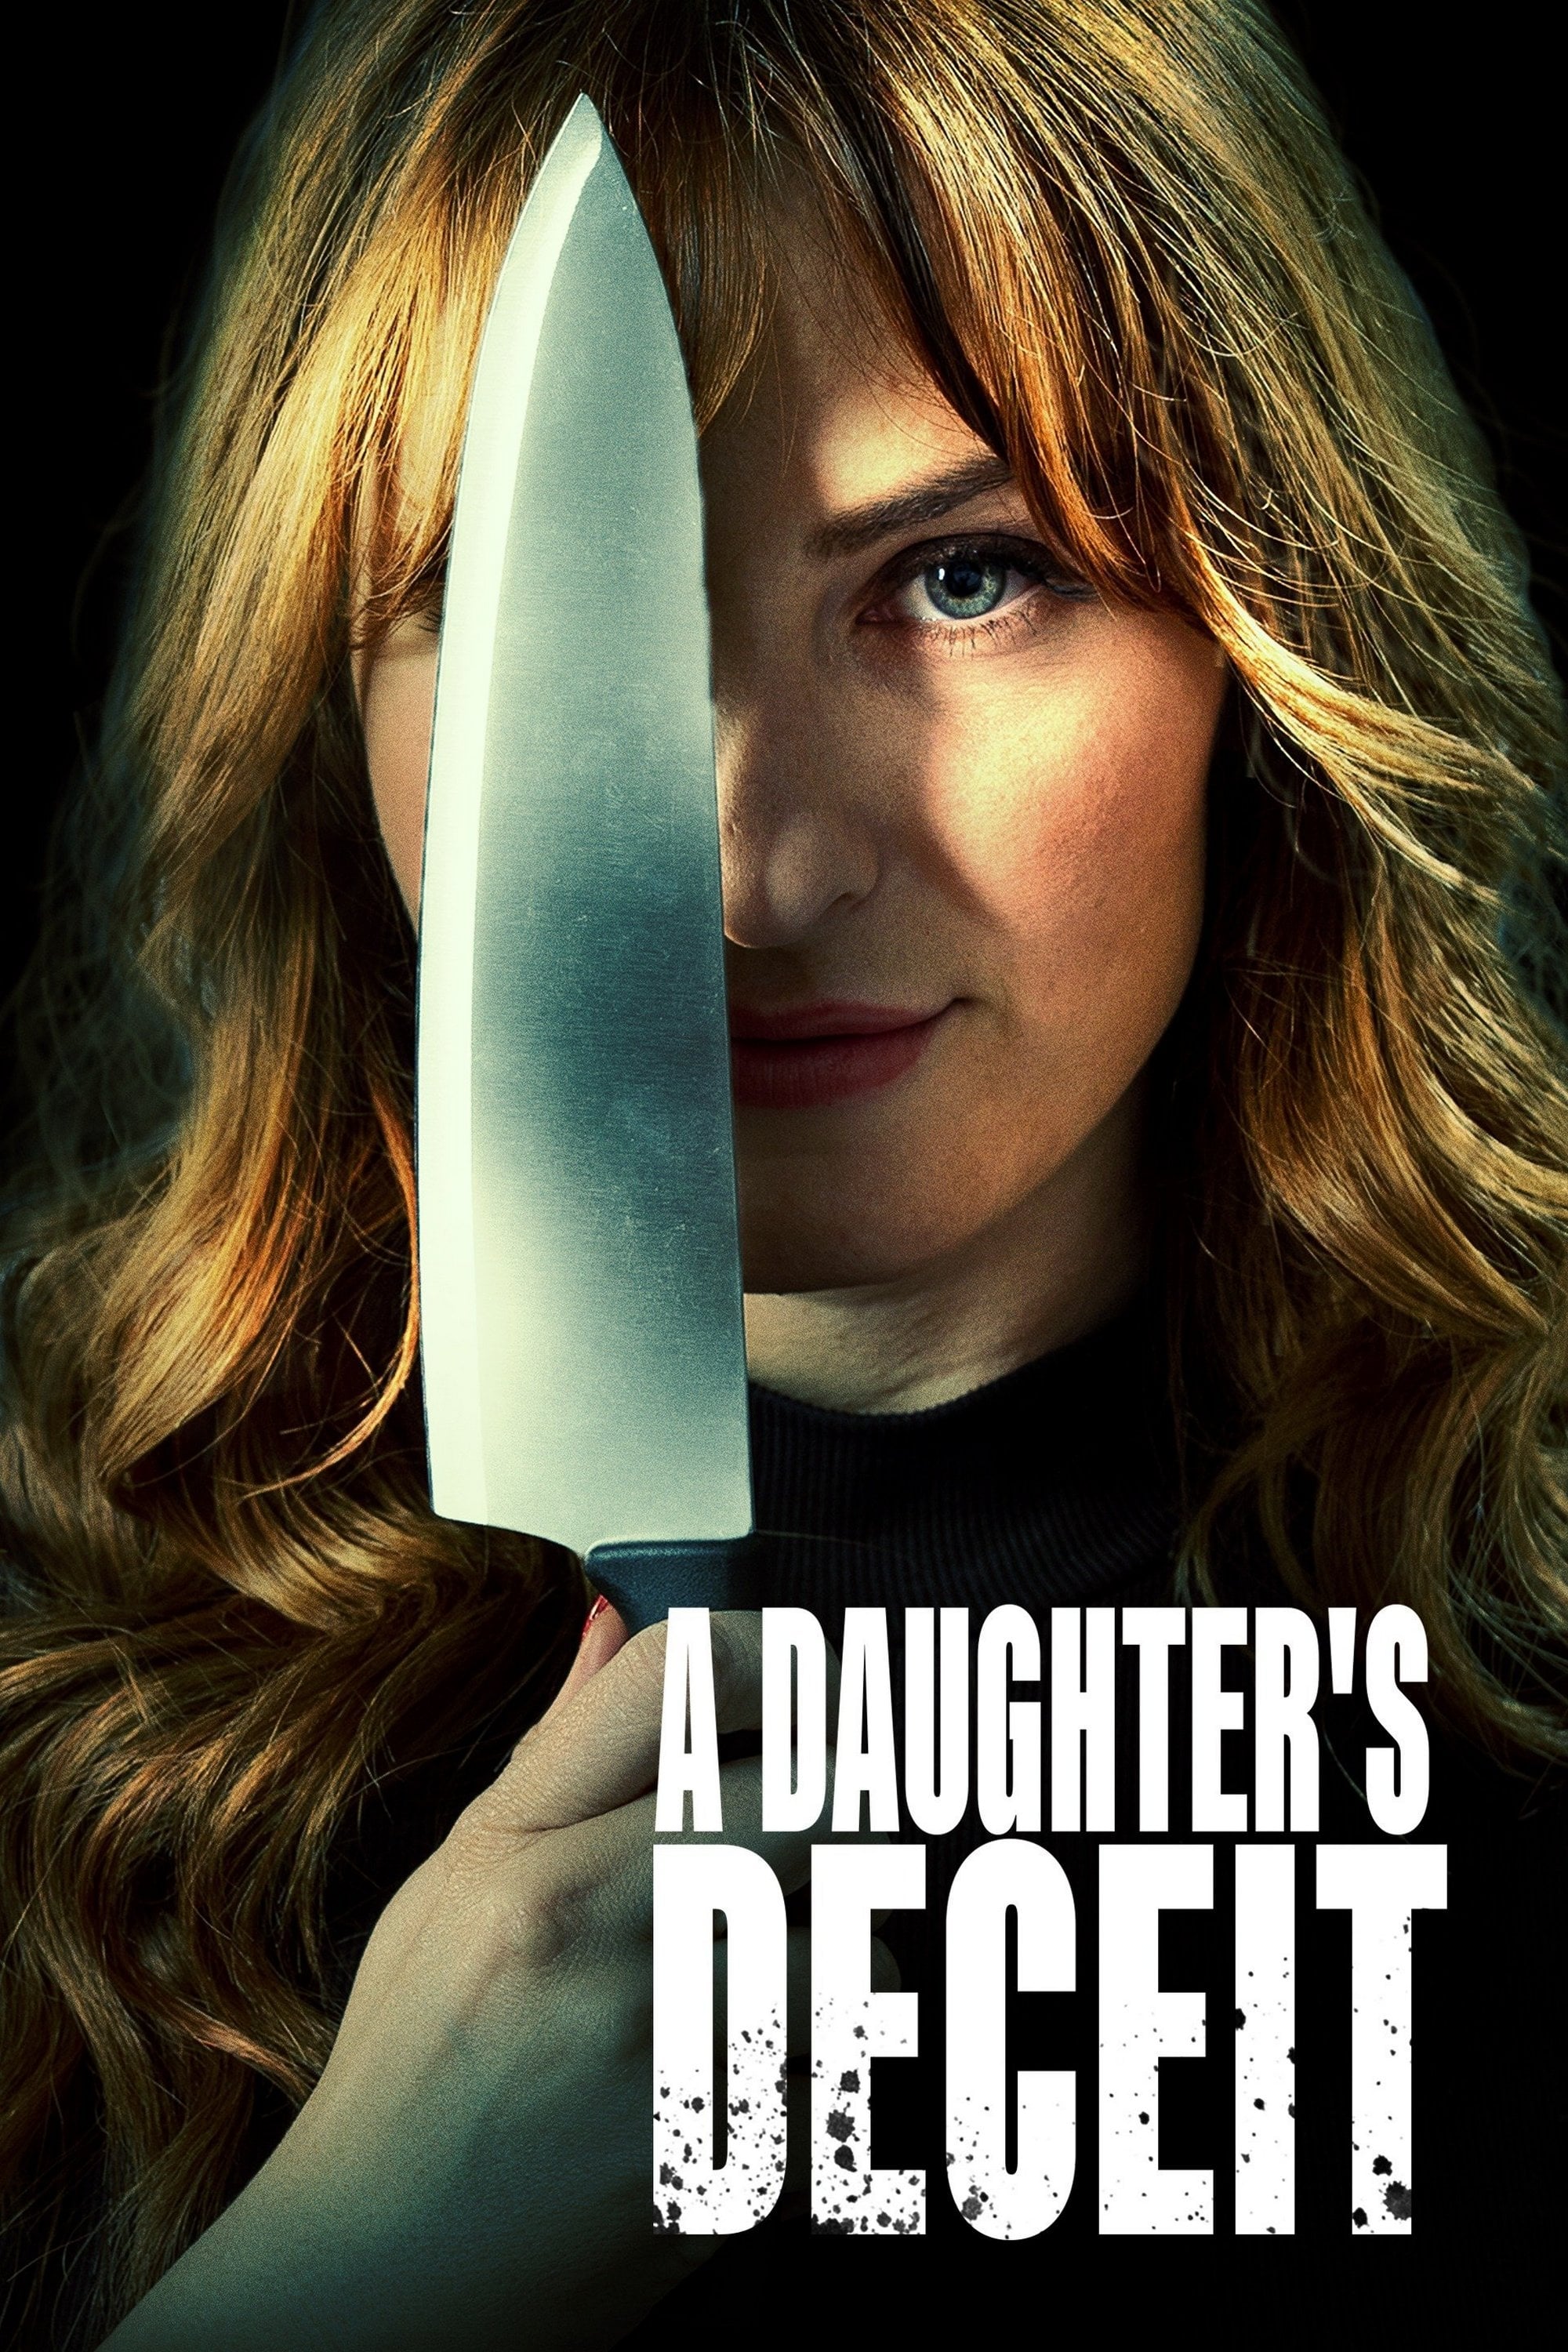 A Daughter's Deceit (2021)